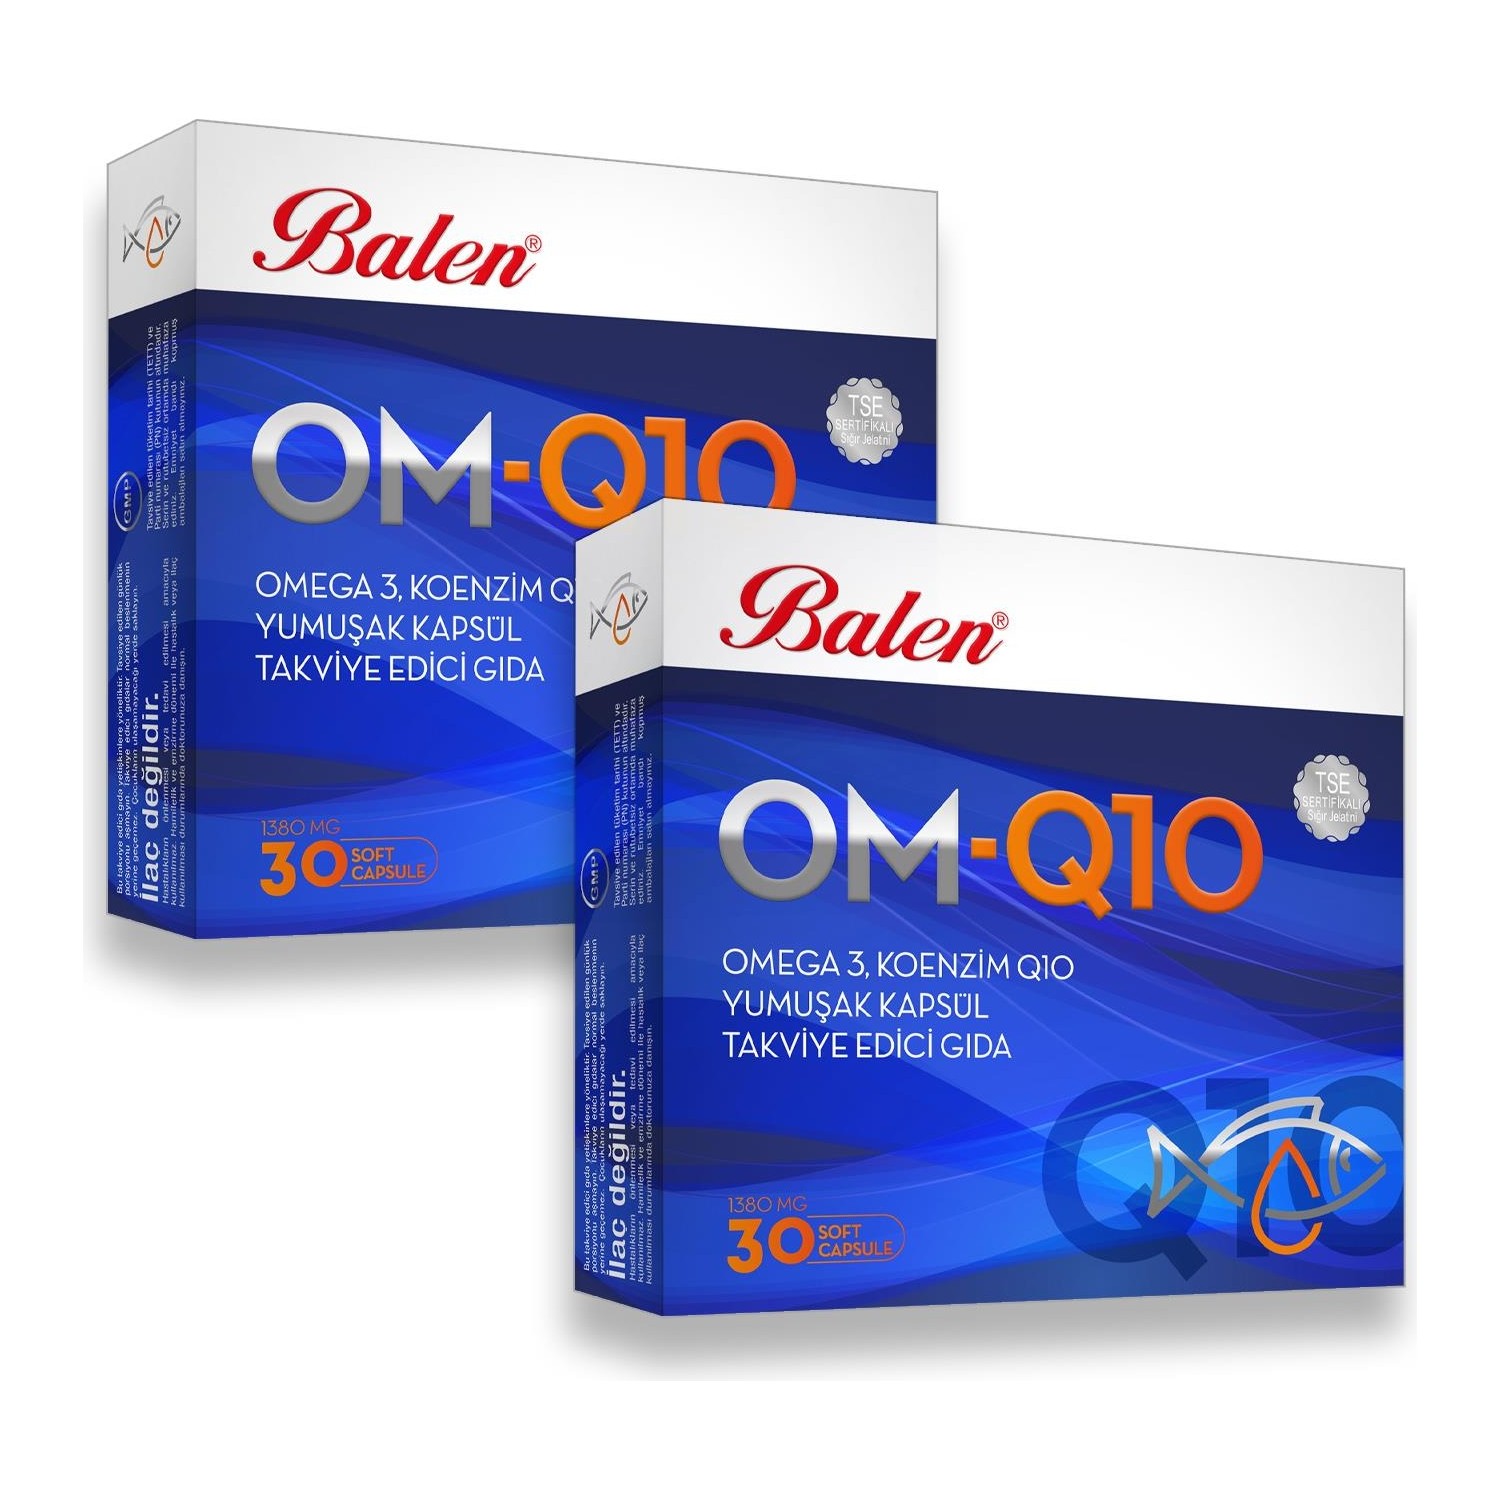 Рыбий жир Balen OM-Q10 Omega-3, 2 упаковки по 30 мягких капсул коэнзим q10 плюс витамир 30 капсул по 200 мг